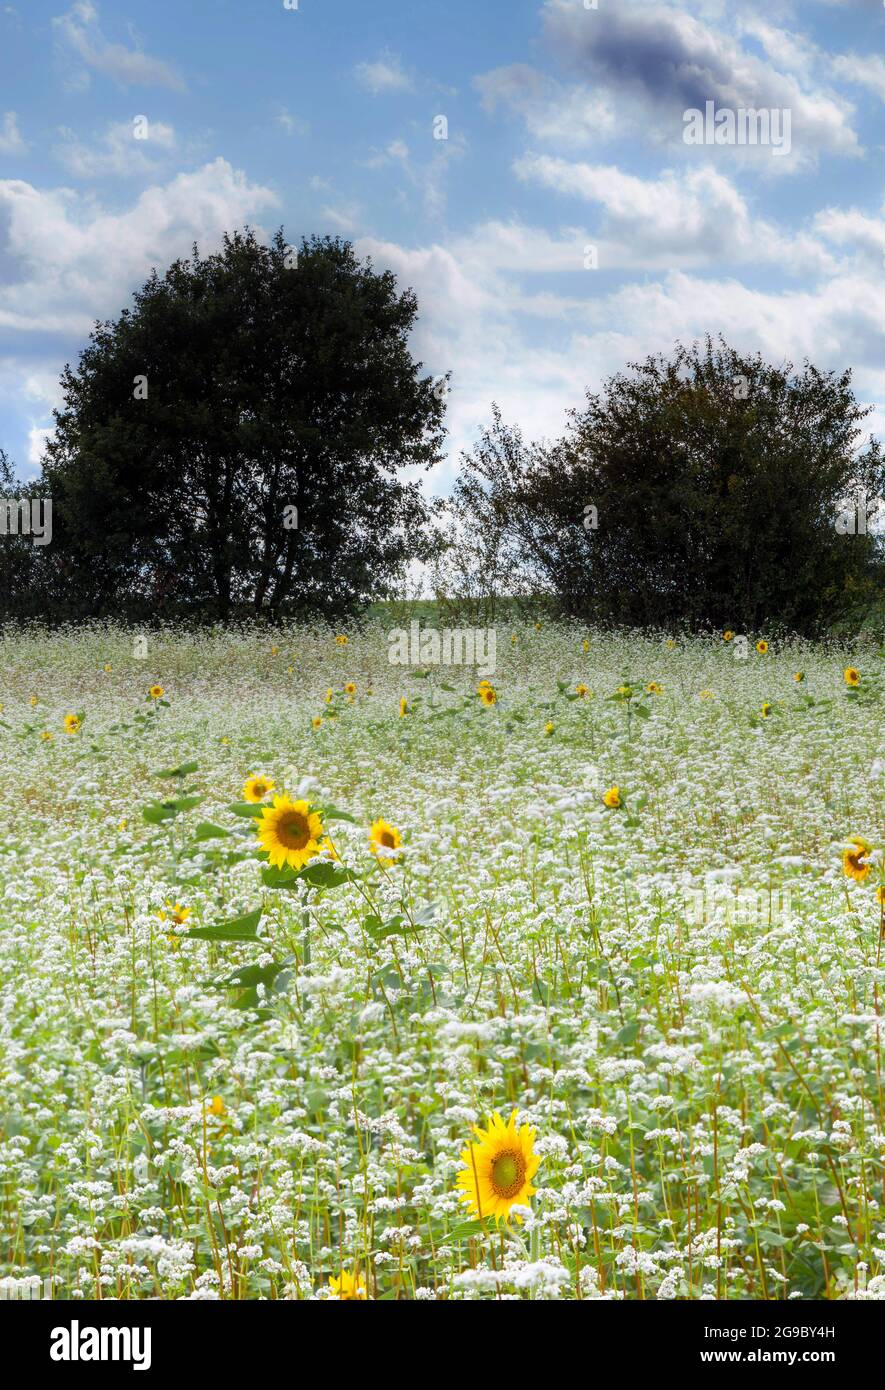 Les tournesols jaunes occasionnels, qui étaient la récolte de l'année dernière, s'élèvent au-dessus des fleurs blanches de la récolte actuelle de soja dans un champ dans le Gers, France. Banque D'Images